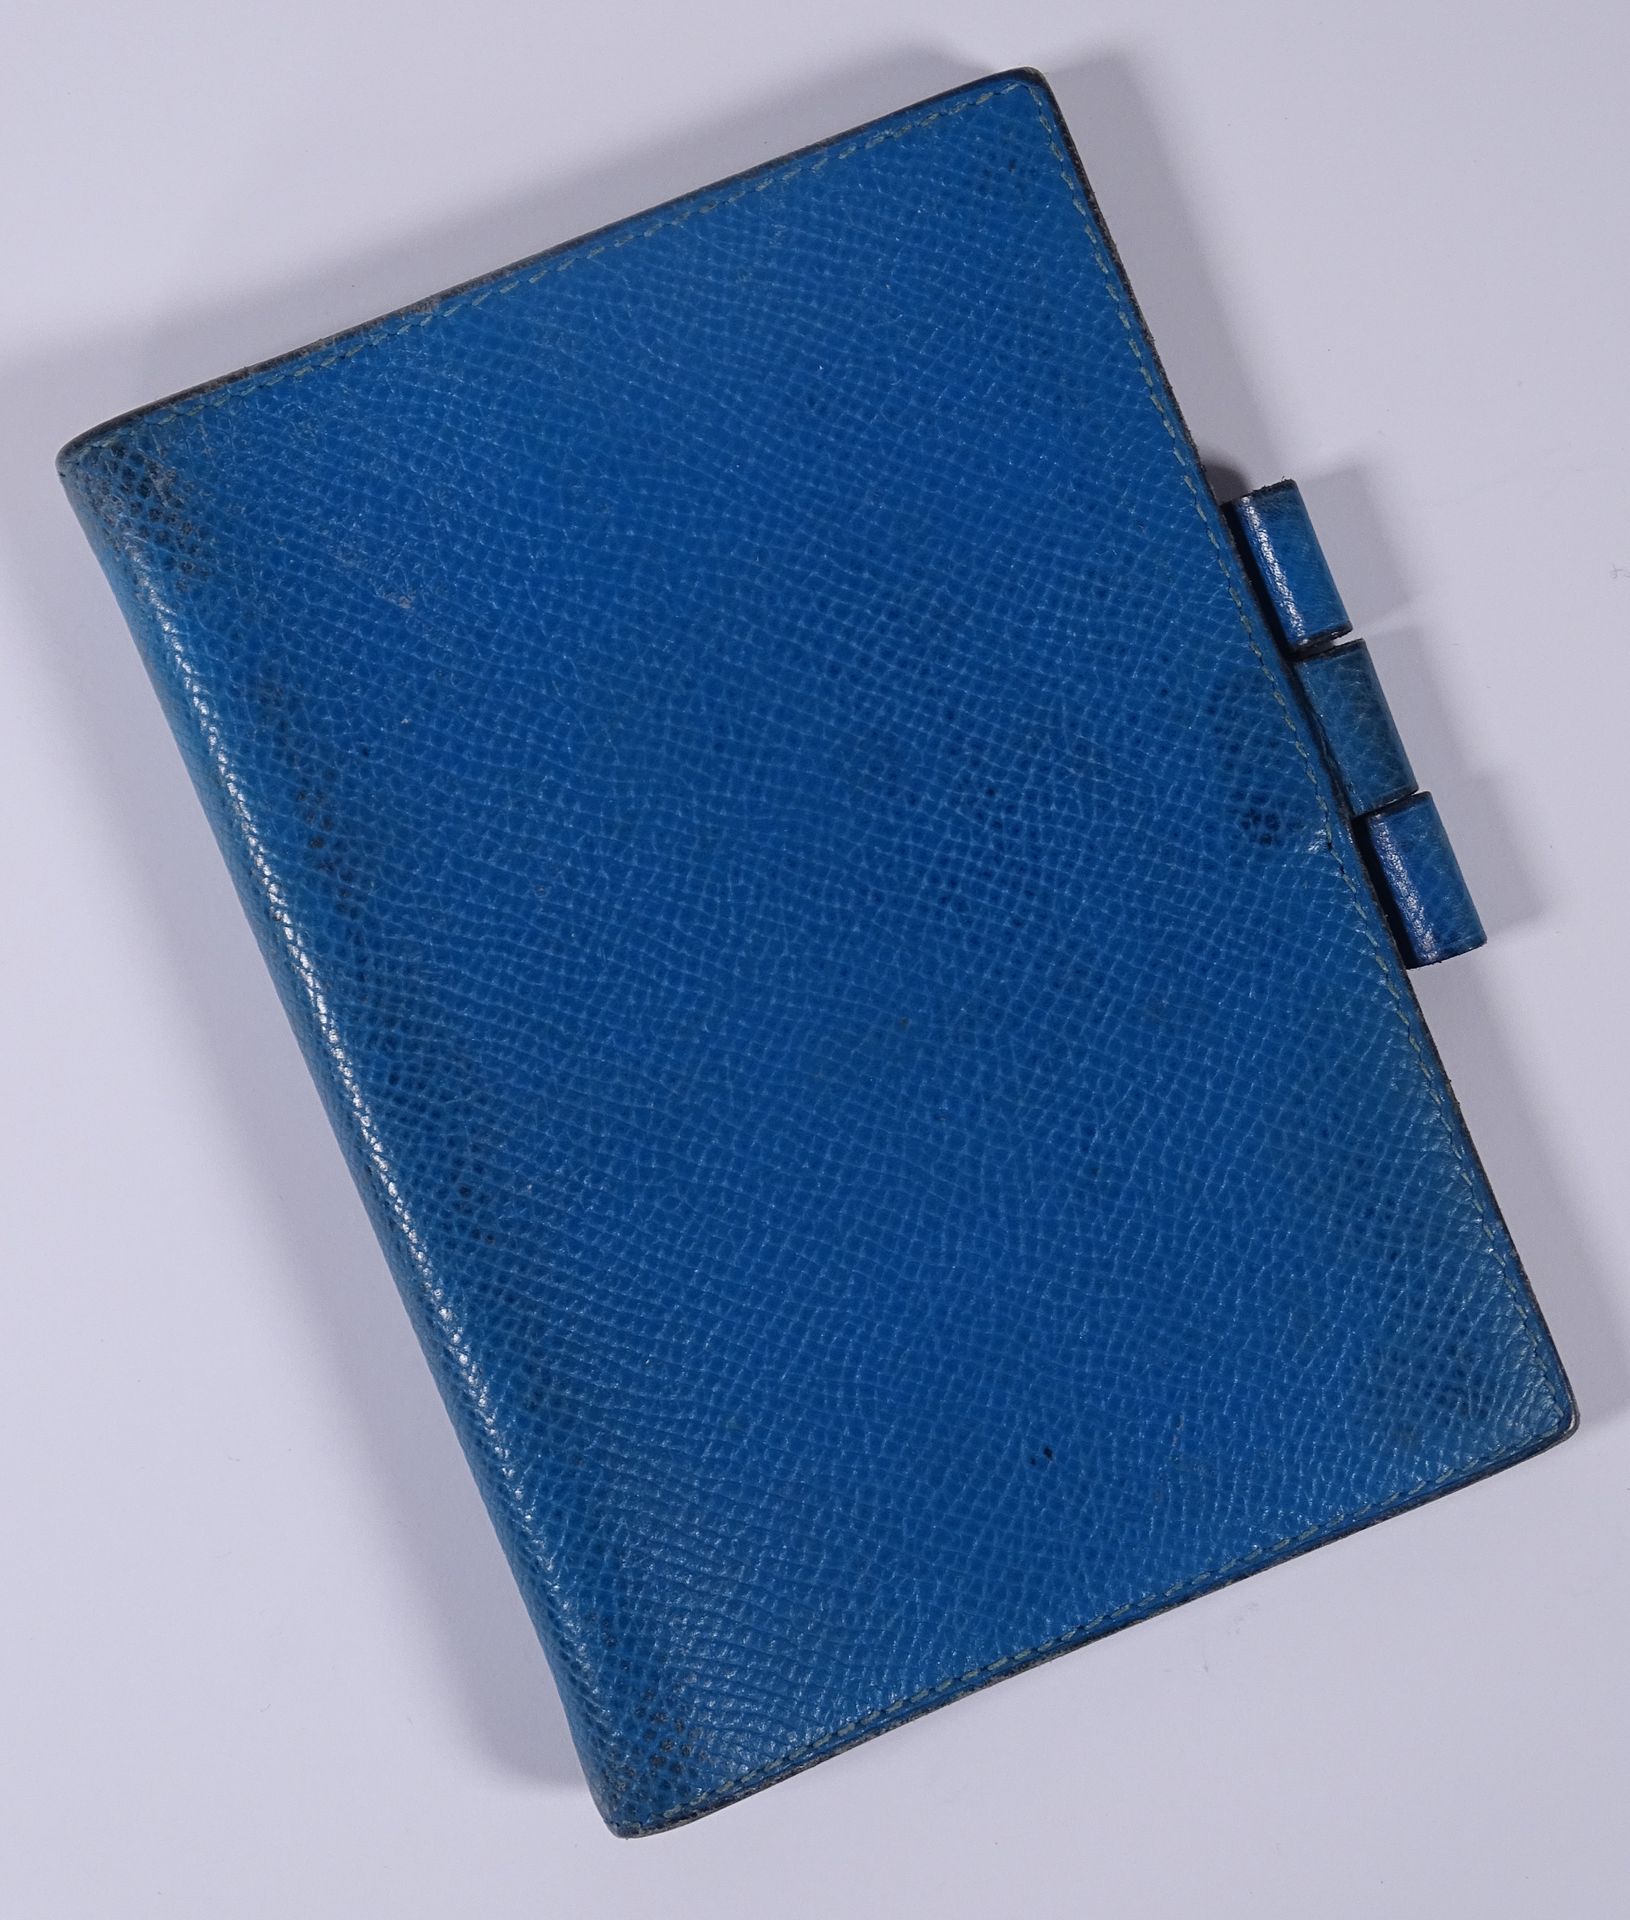 HERMES Porta bloc de notas de cuero azul.

13,5 x 9,5 cm.

(falta el cuaderno y &hellip;